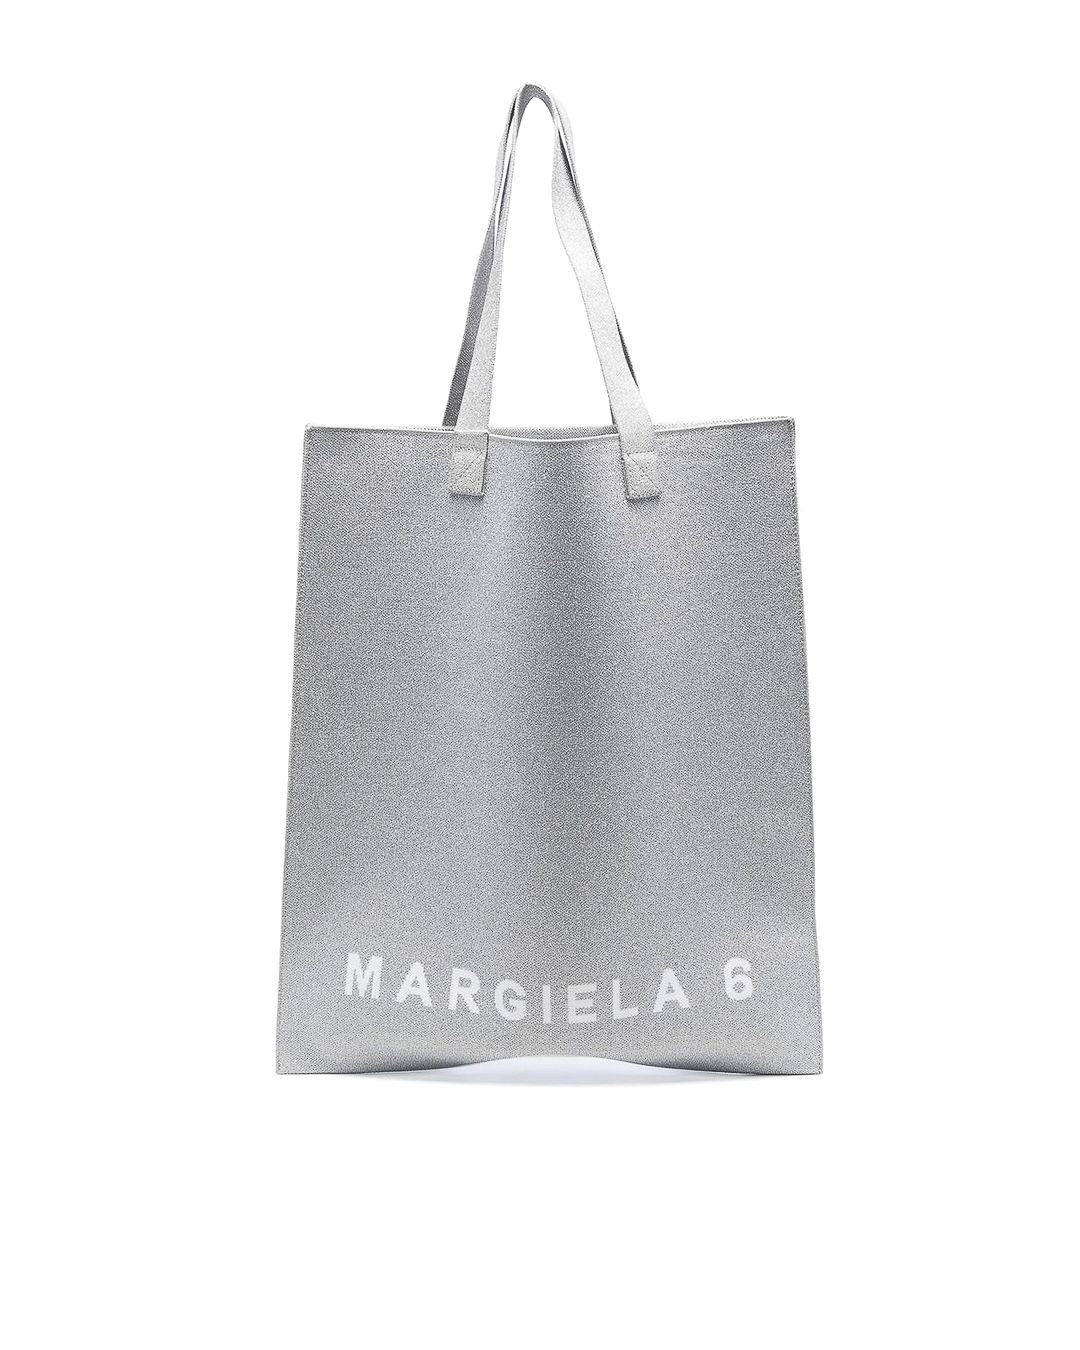 MM6 Maison Margiela с логотипом бренда  артикул SB5WC0006 марки MM6 Maison Margiela купить за 28000 руб.